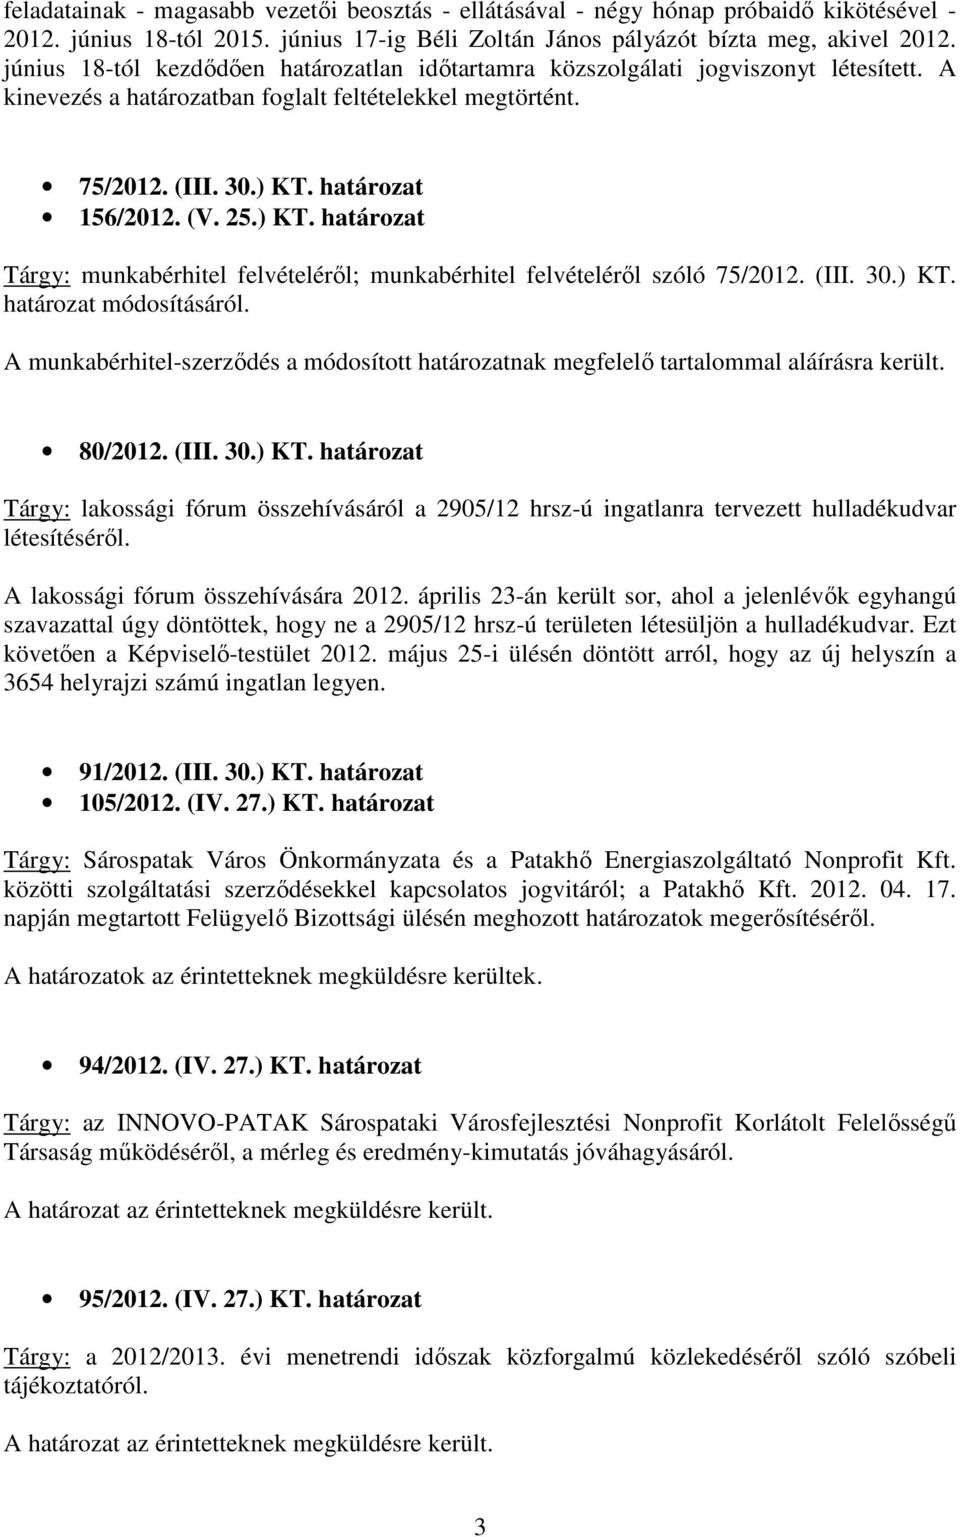 ) KT. határozat Tárgy: munkabérhitel felvételérıl; munkabérhitel felvételérıl szóló 75/2012. (III. 30.) KT. határozat módosításáról.